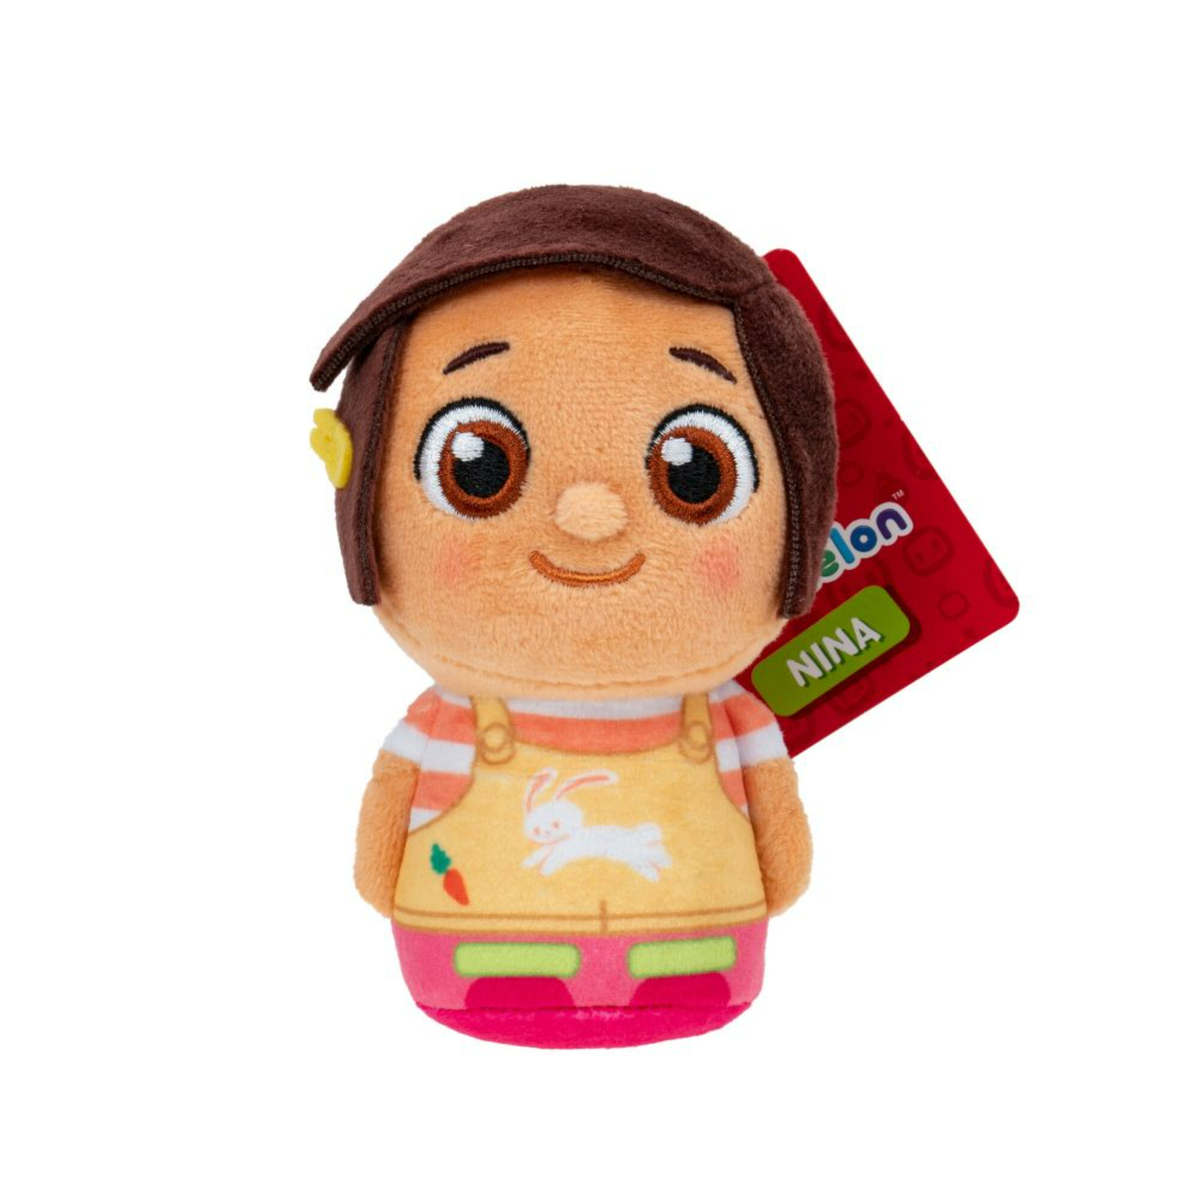 Cocomelon Mini Plush Toy, Assorted 1pc, CMW0239